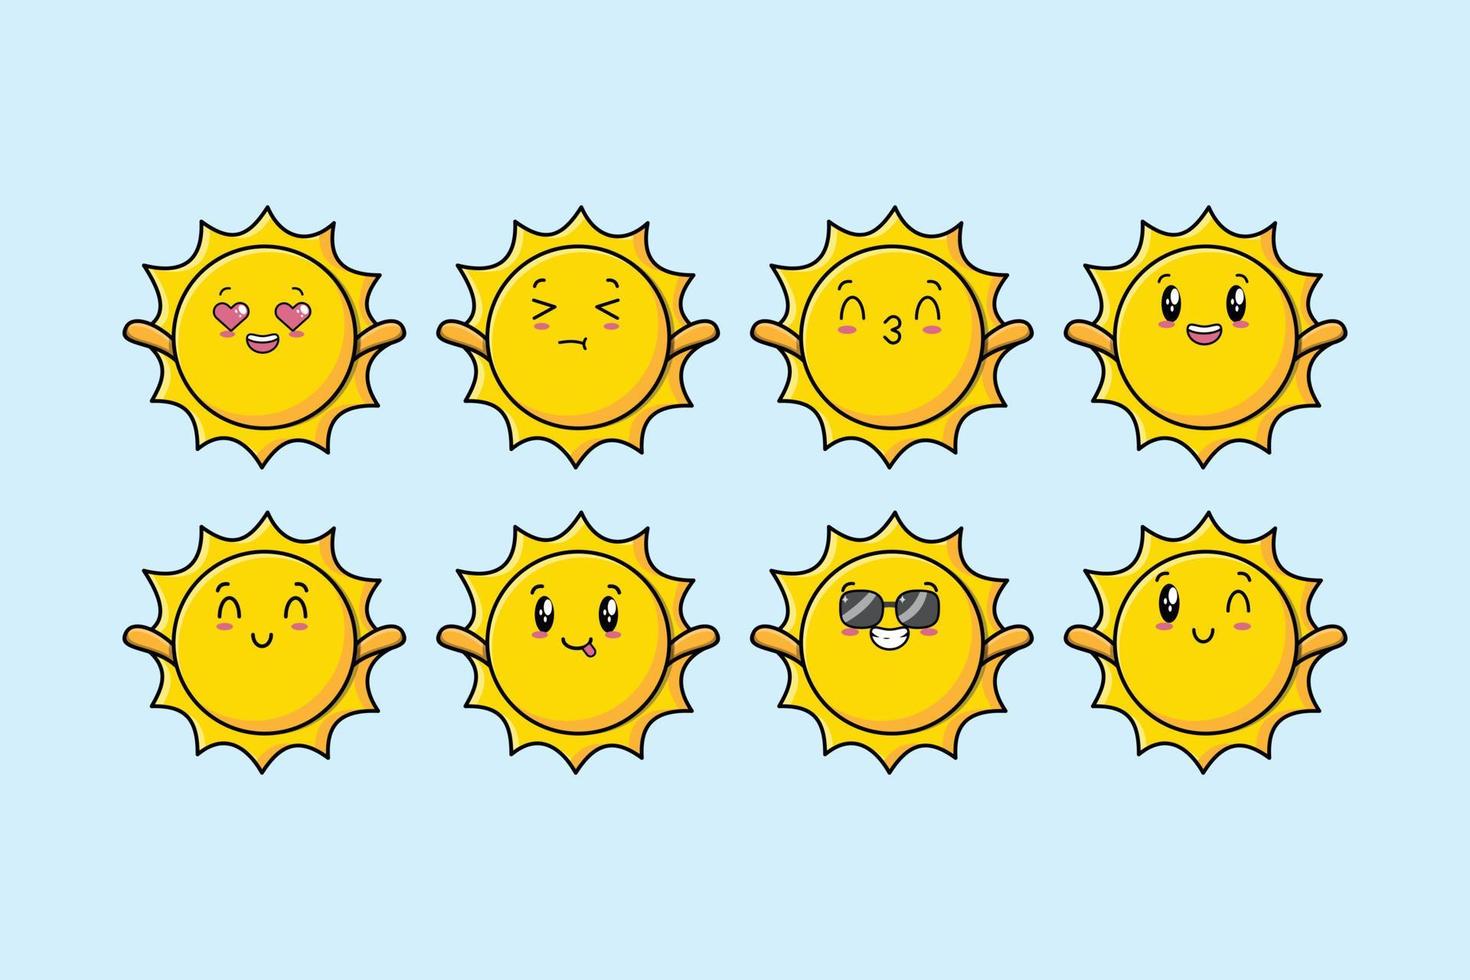 Establecer dibujos animados de sol kawaii con diferentes expresiones vector